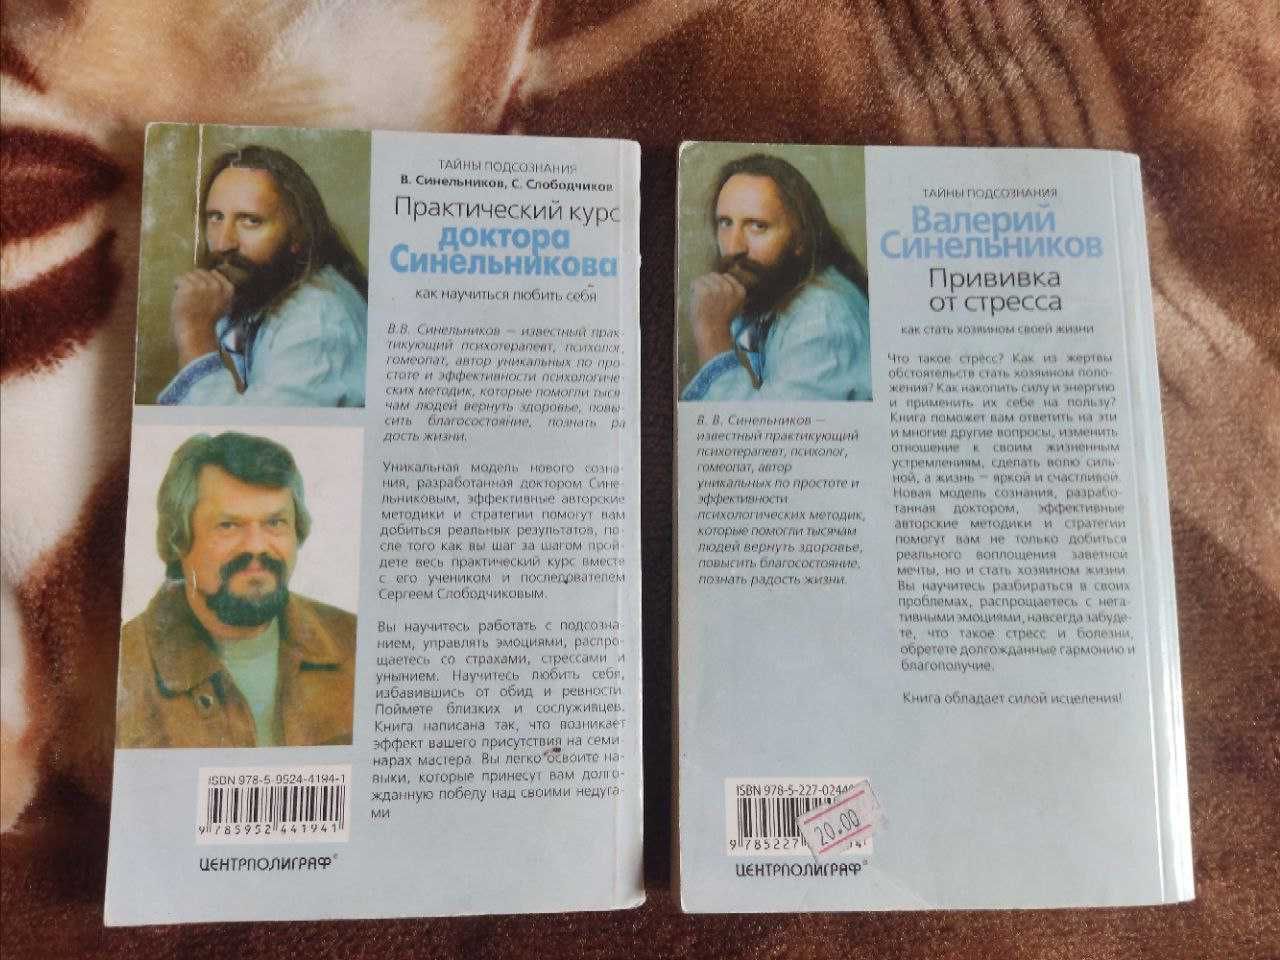 Книги Валерия Синельникова